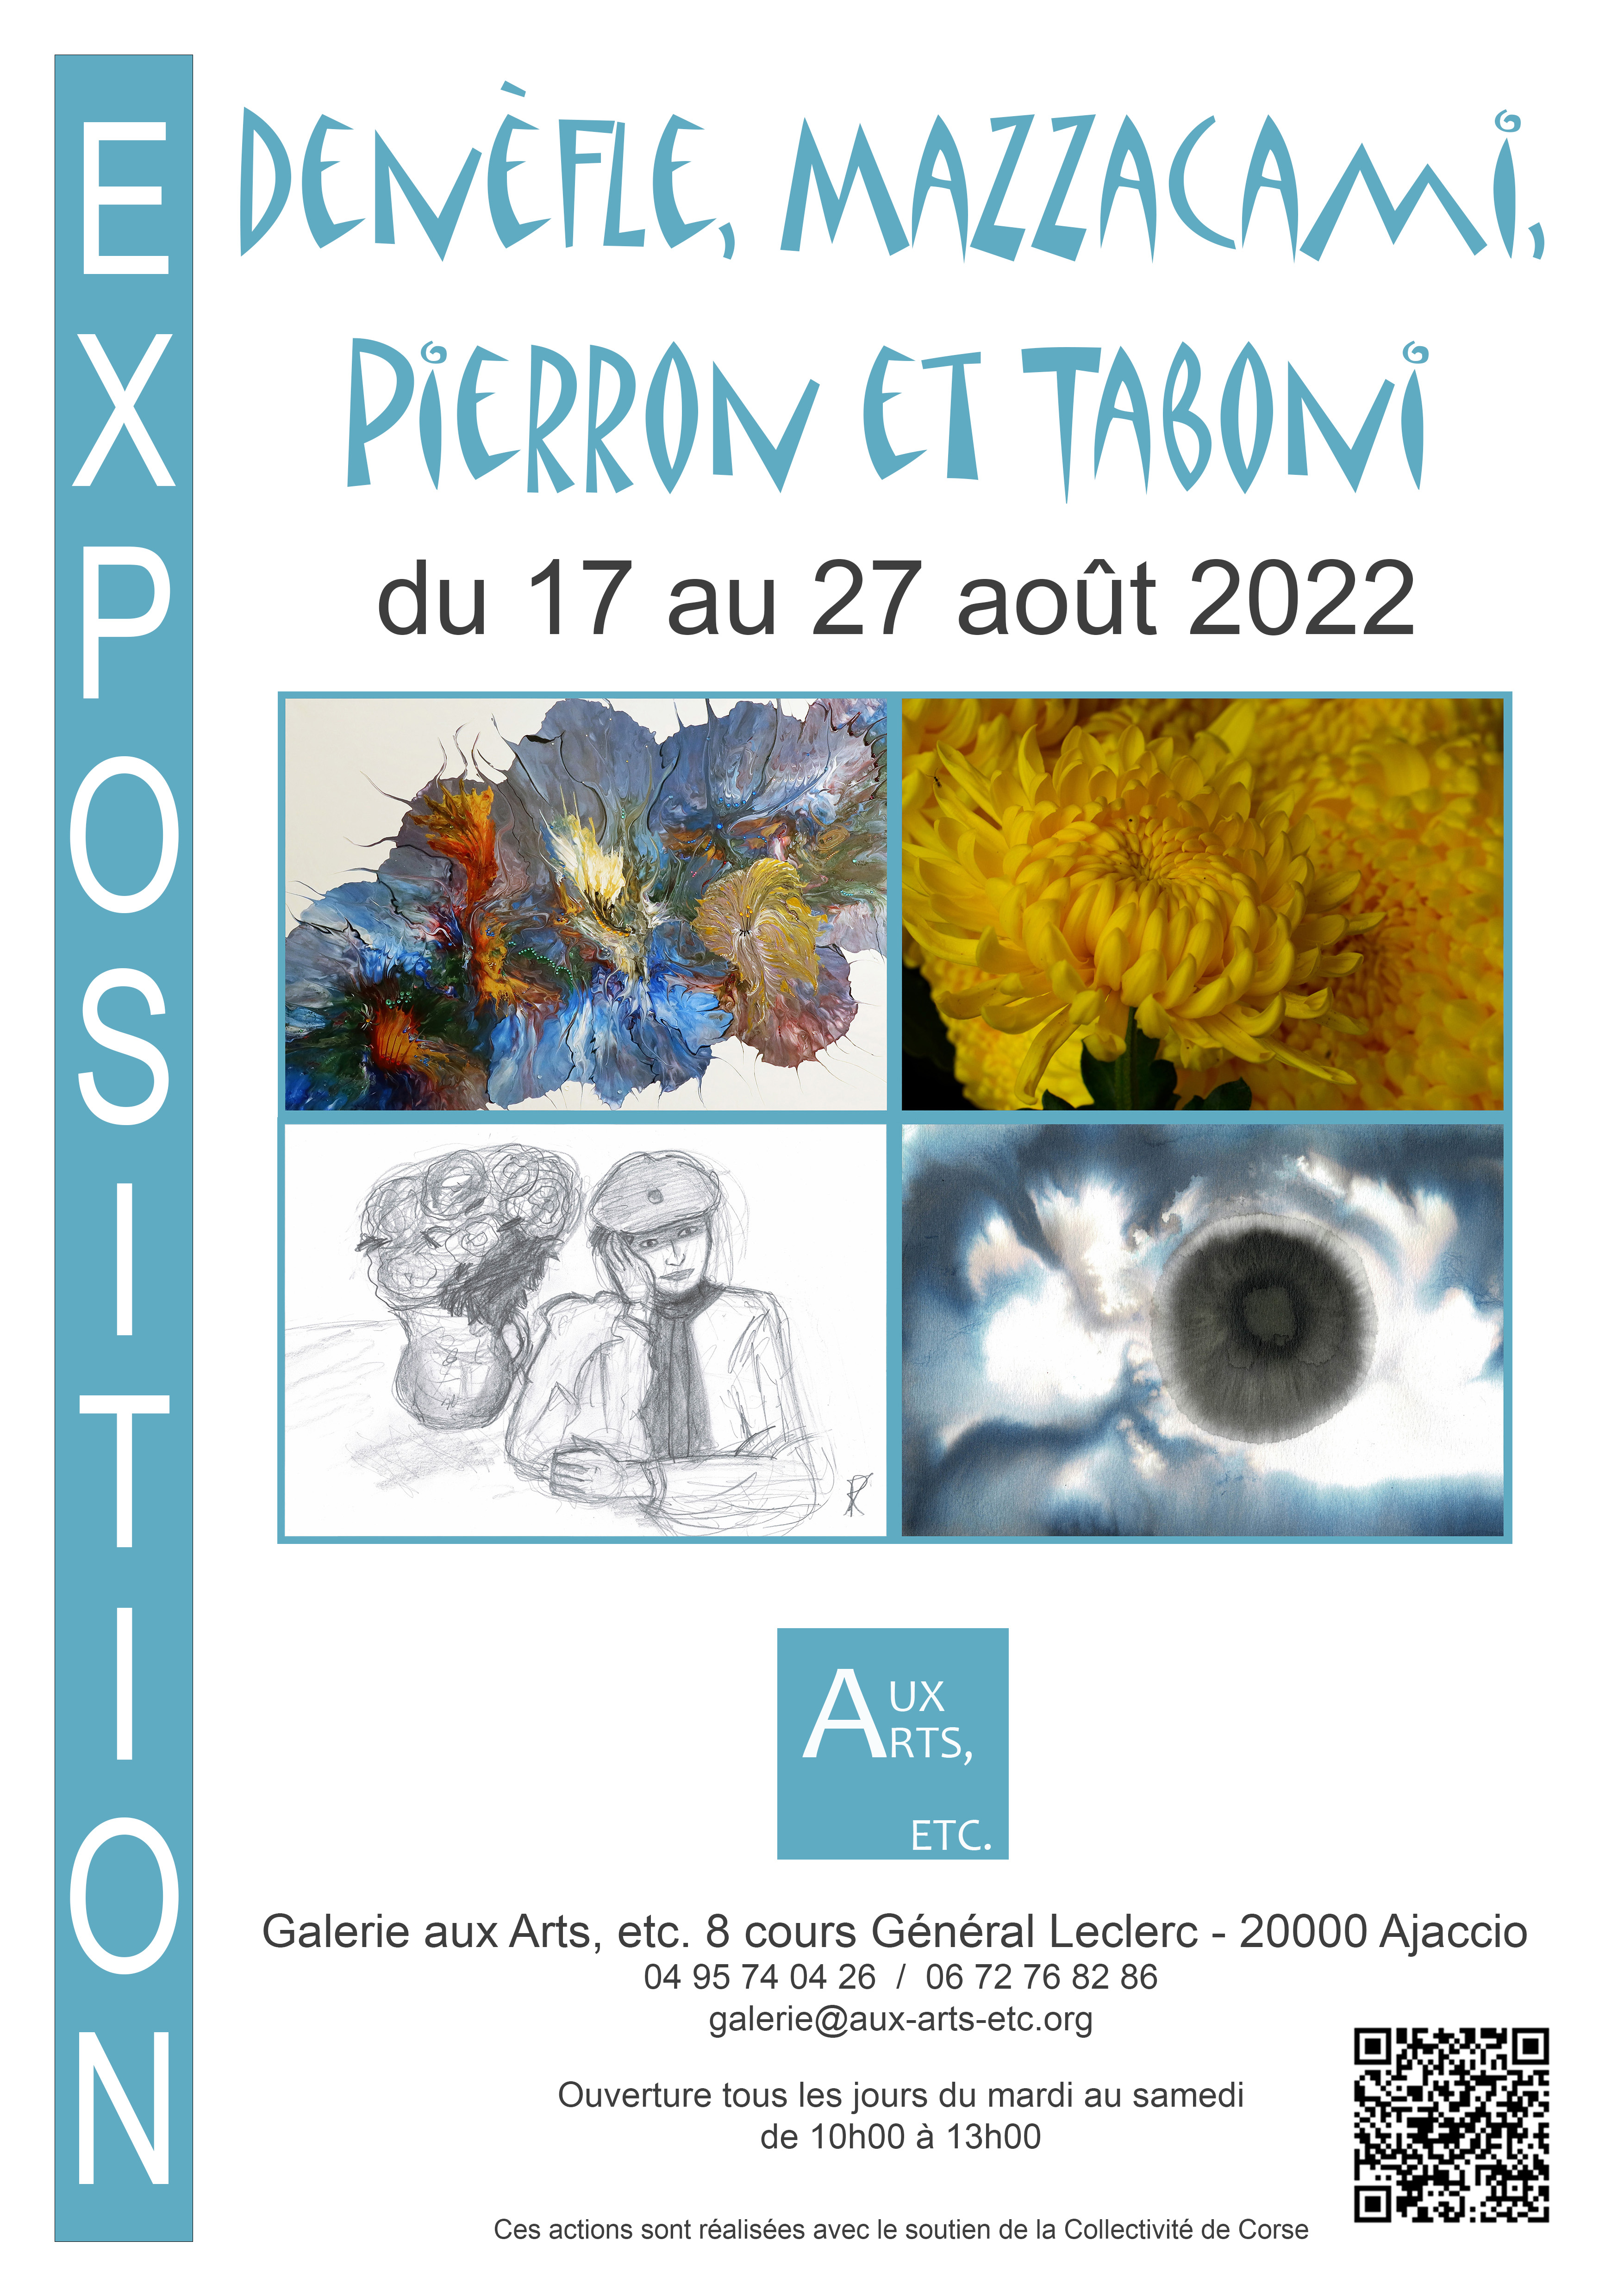 2022 - Denefle Mazzacami Pierron Taboni Galerie aux Arts